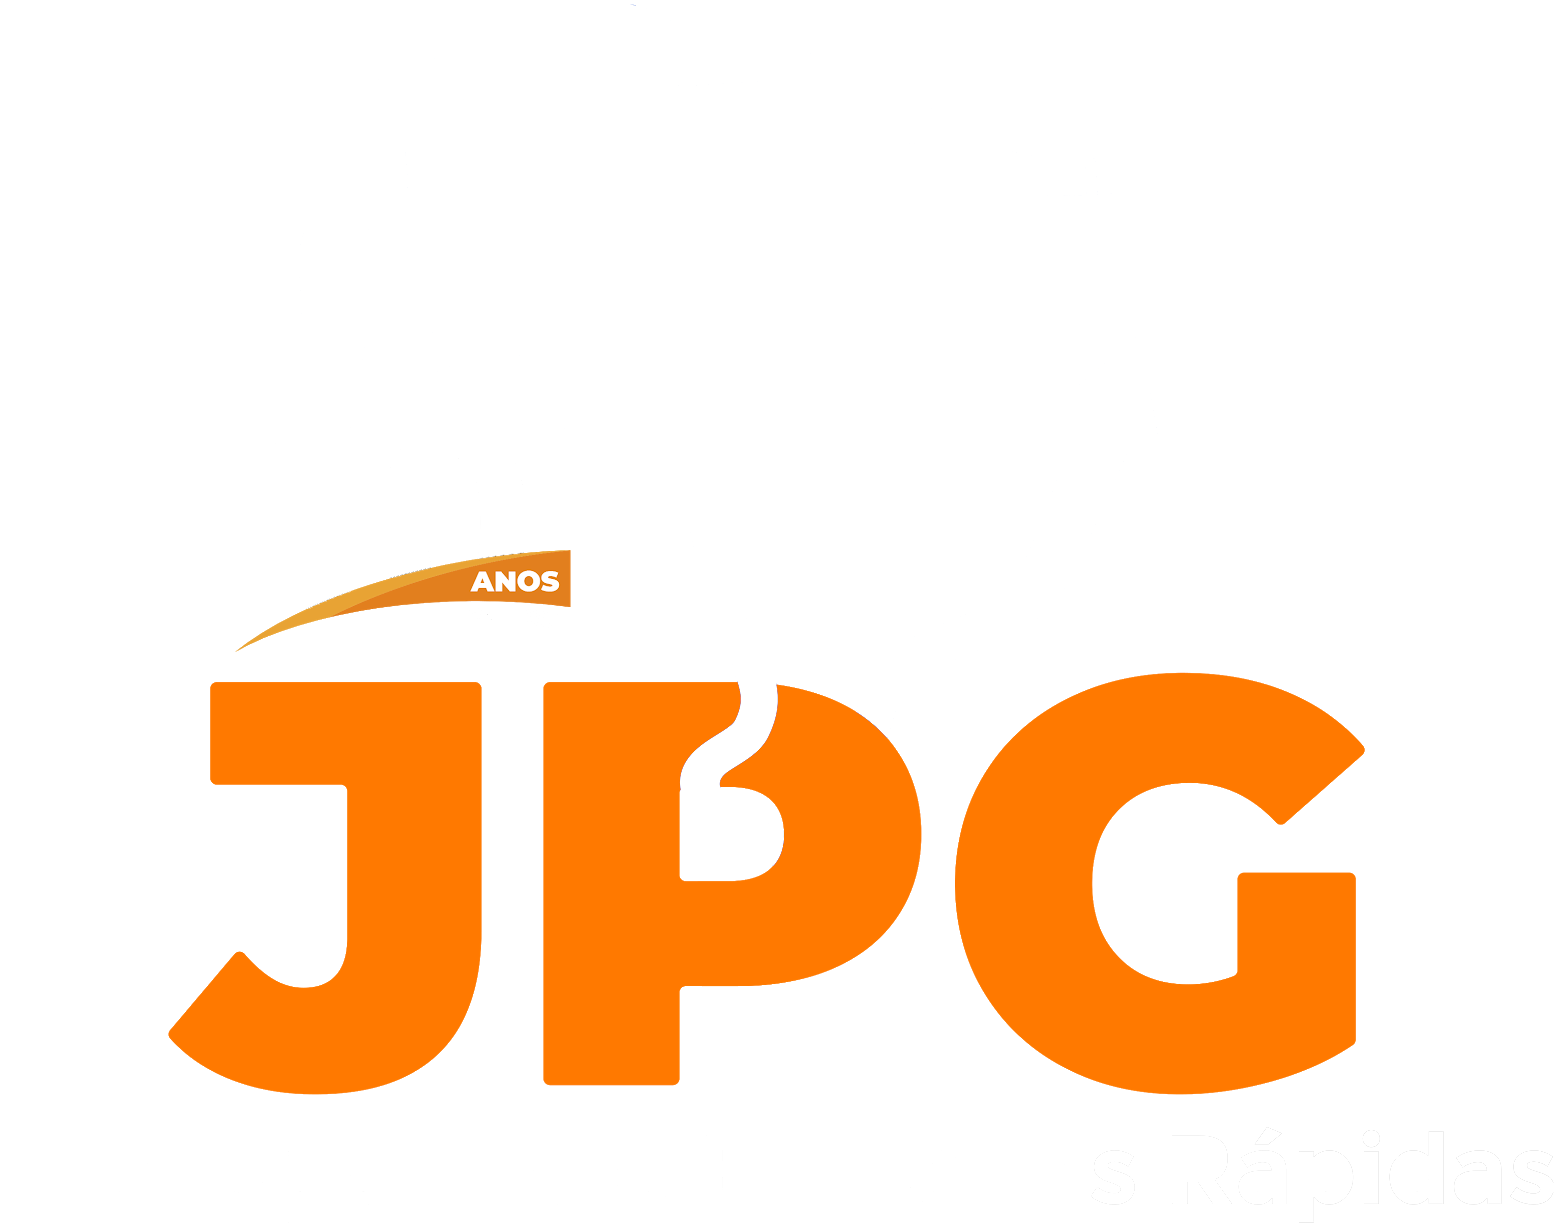 JPG Express